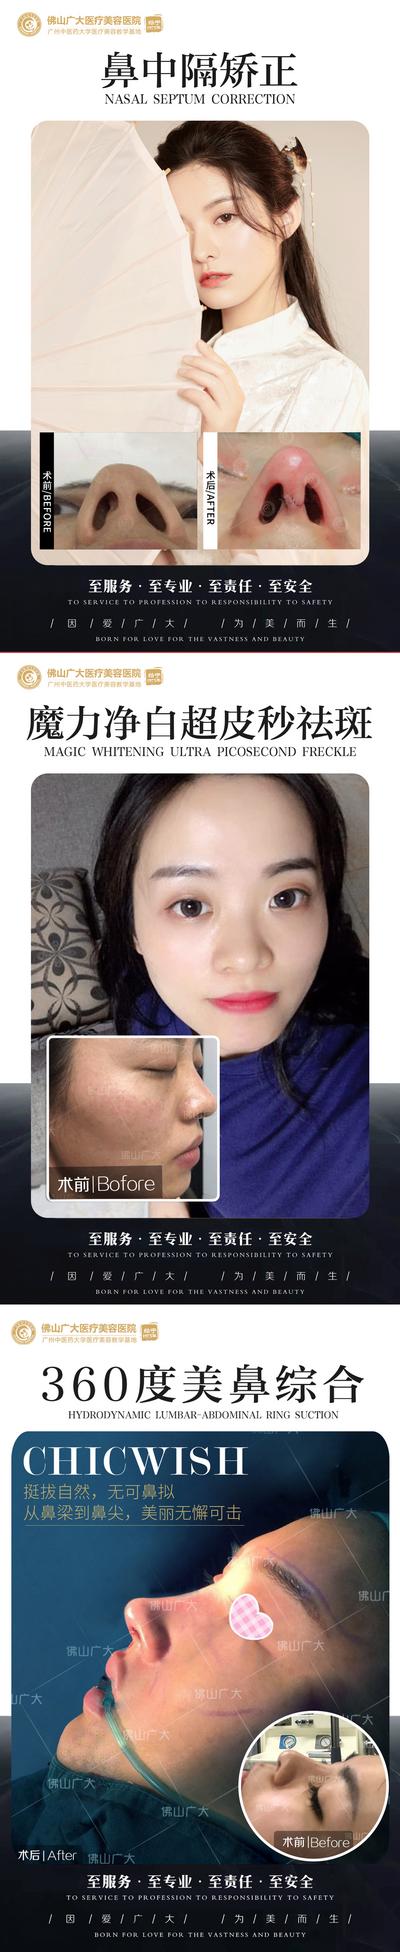 【南门网】海报 医美 人物对比 项目 案例 鼻综合 鼻修复 鼻中隔 祛斑